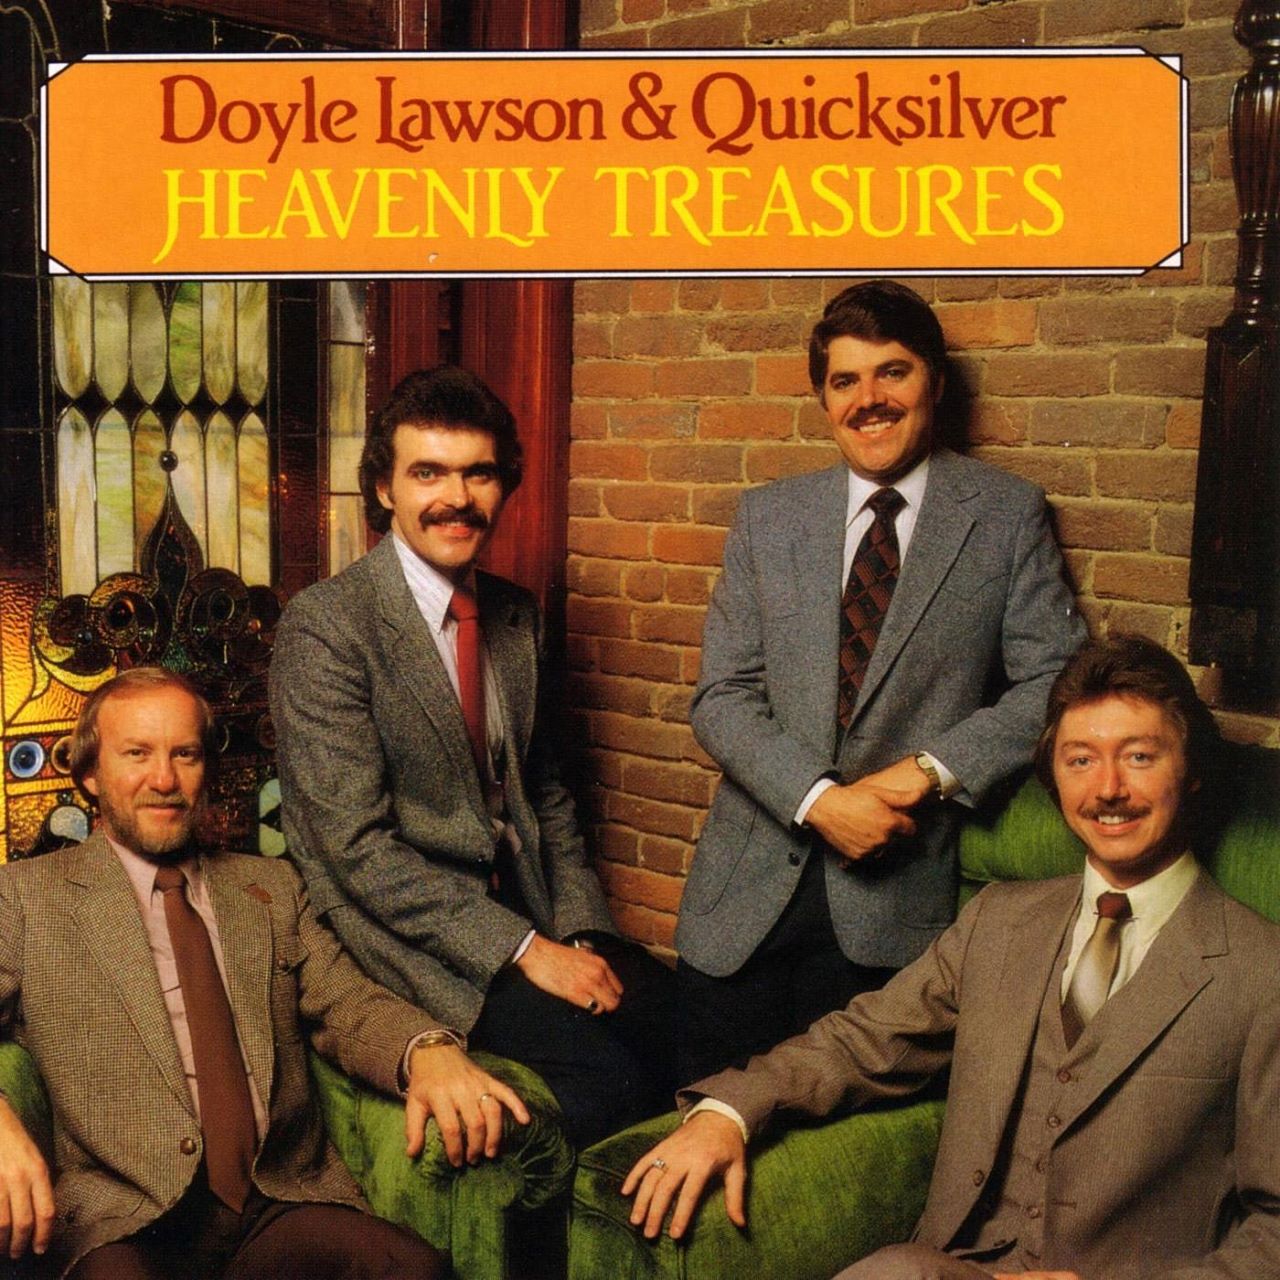 Doyle Lawson & Quicksilver - Heavenly Treasures cover album